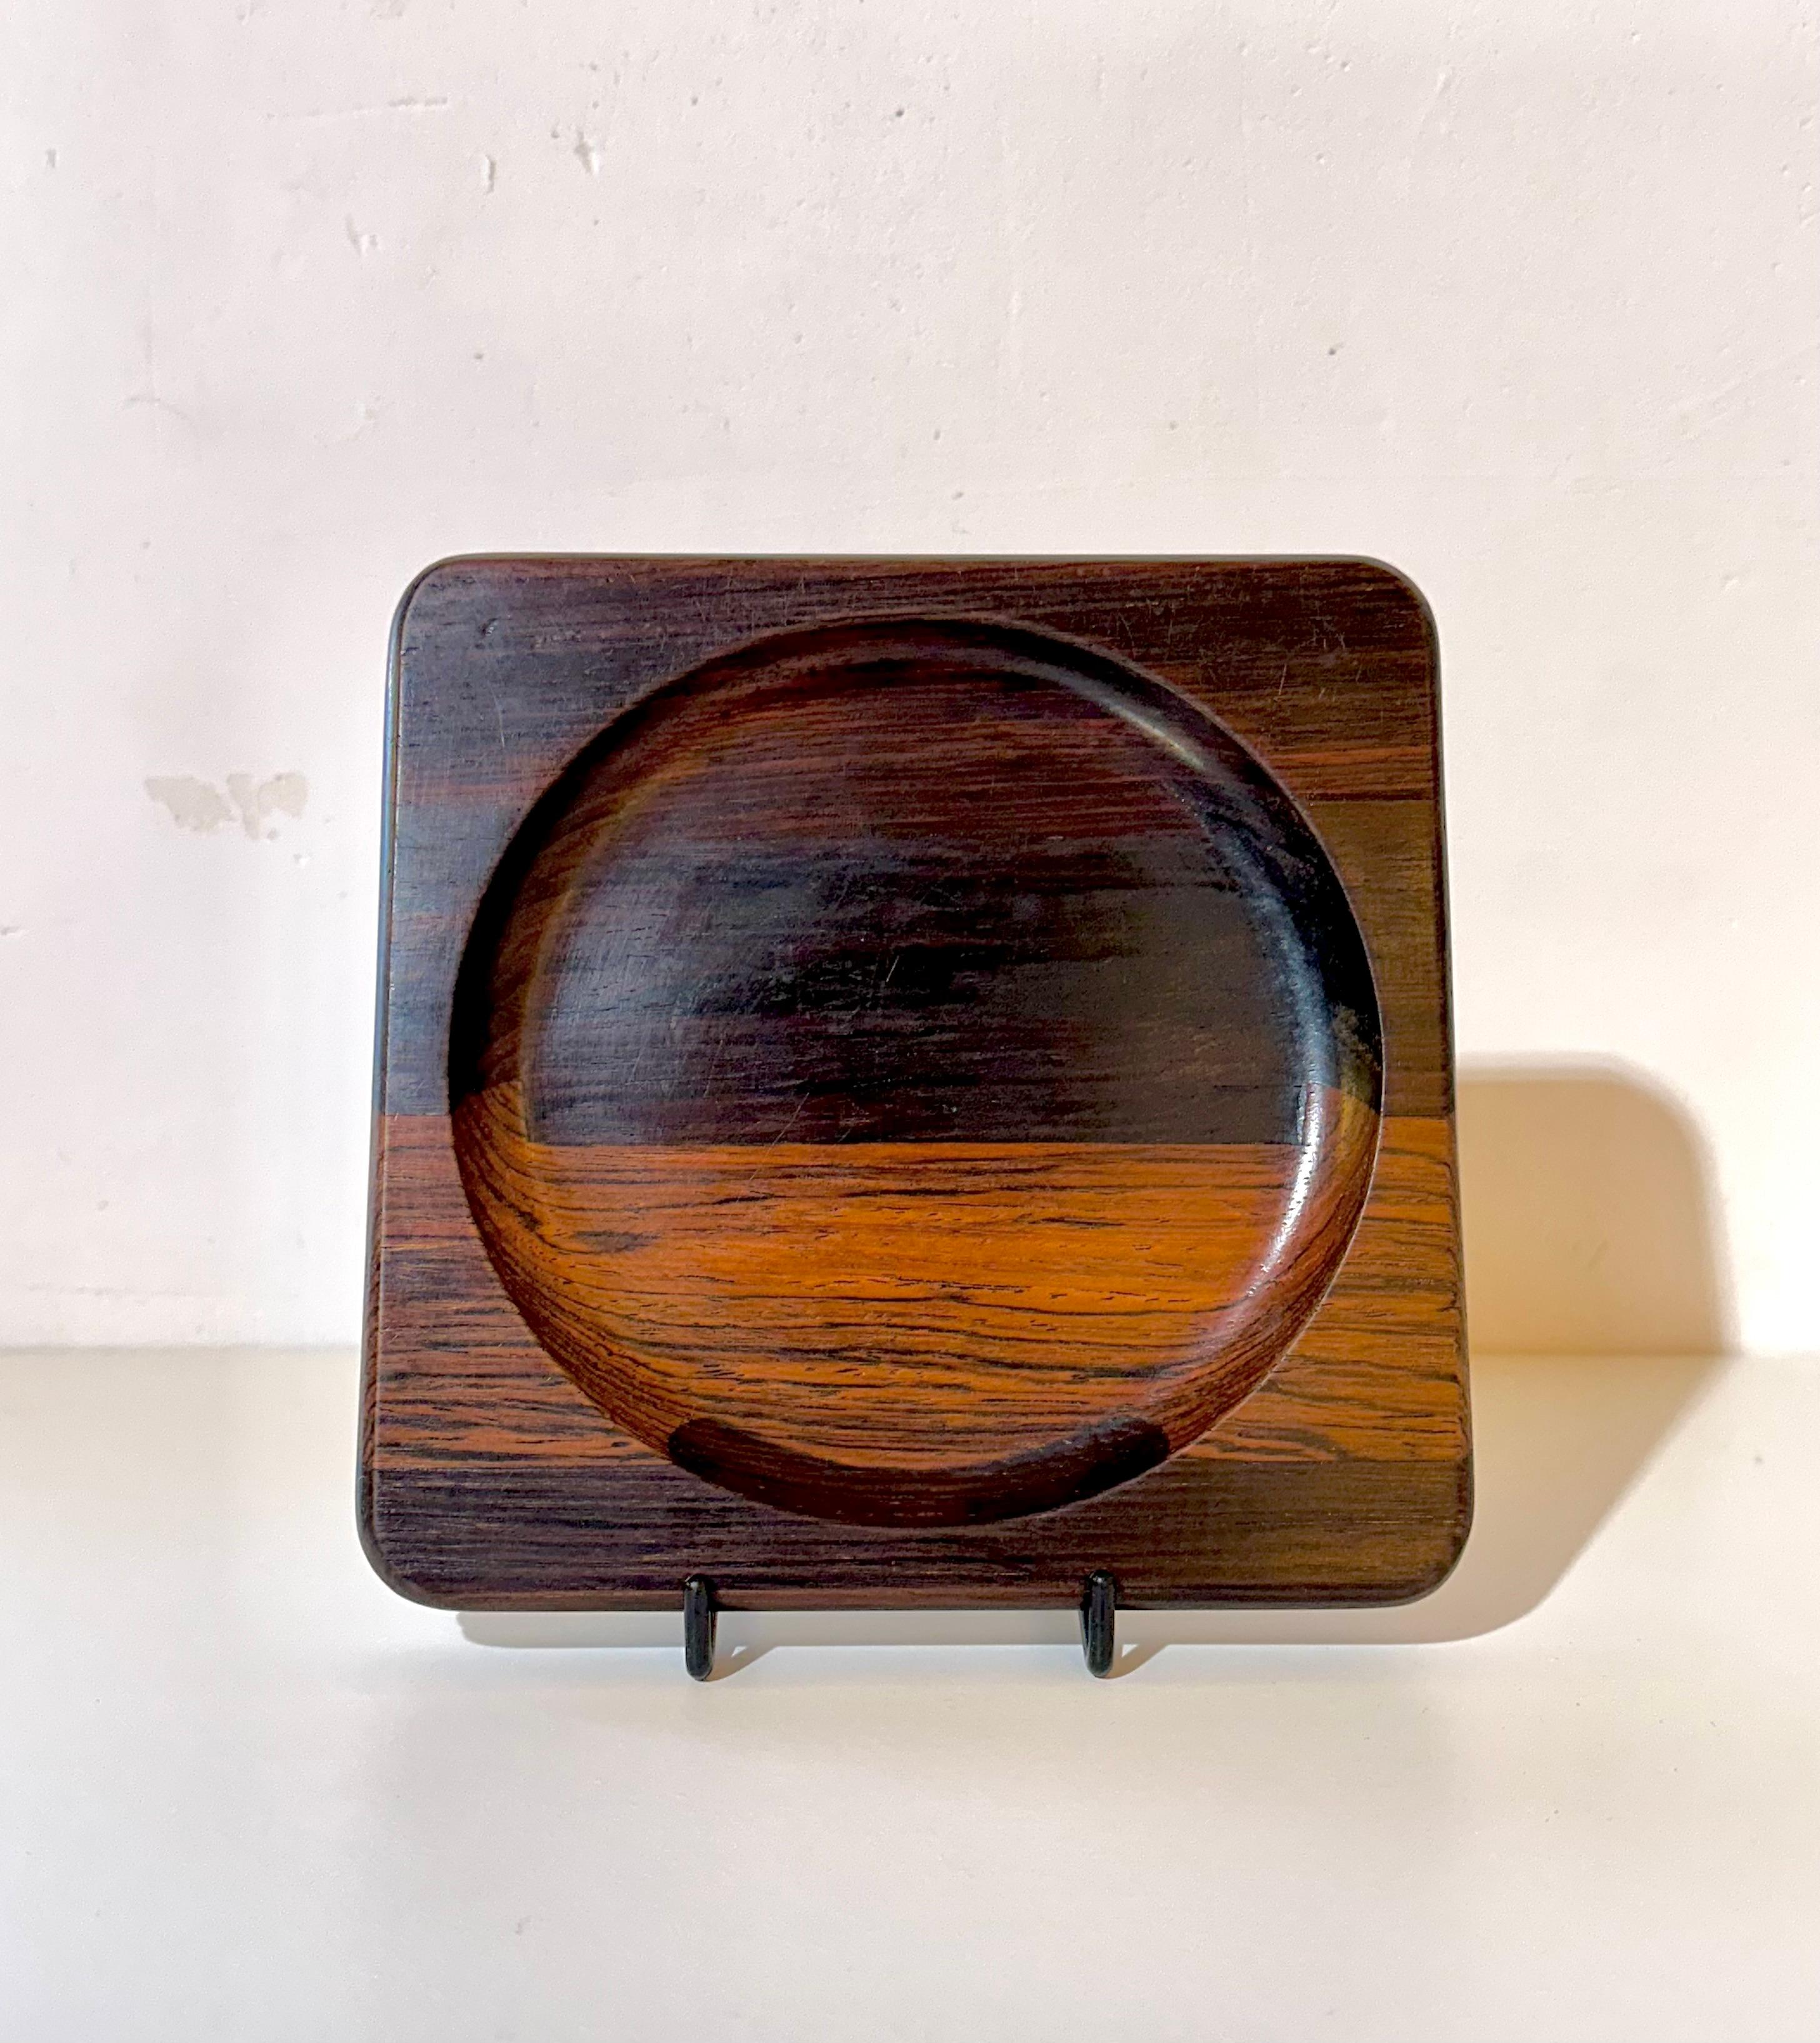 Suite von vier quadratischen Tabletts, entworfen von Jean Gillon, um 1960. Jede Platte hat die Maße 2 x 16 x 16 Zentimeter und bietet eine kompakte Größe und eine geometrische Form, die eine ausgewogene und zeitgenössische Ästhetik hervorruft.

Die